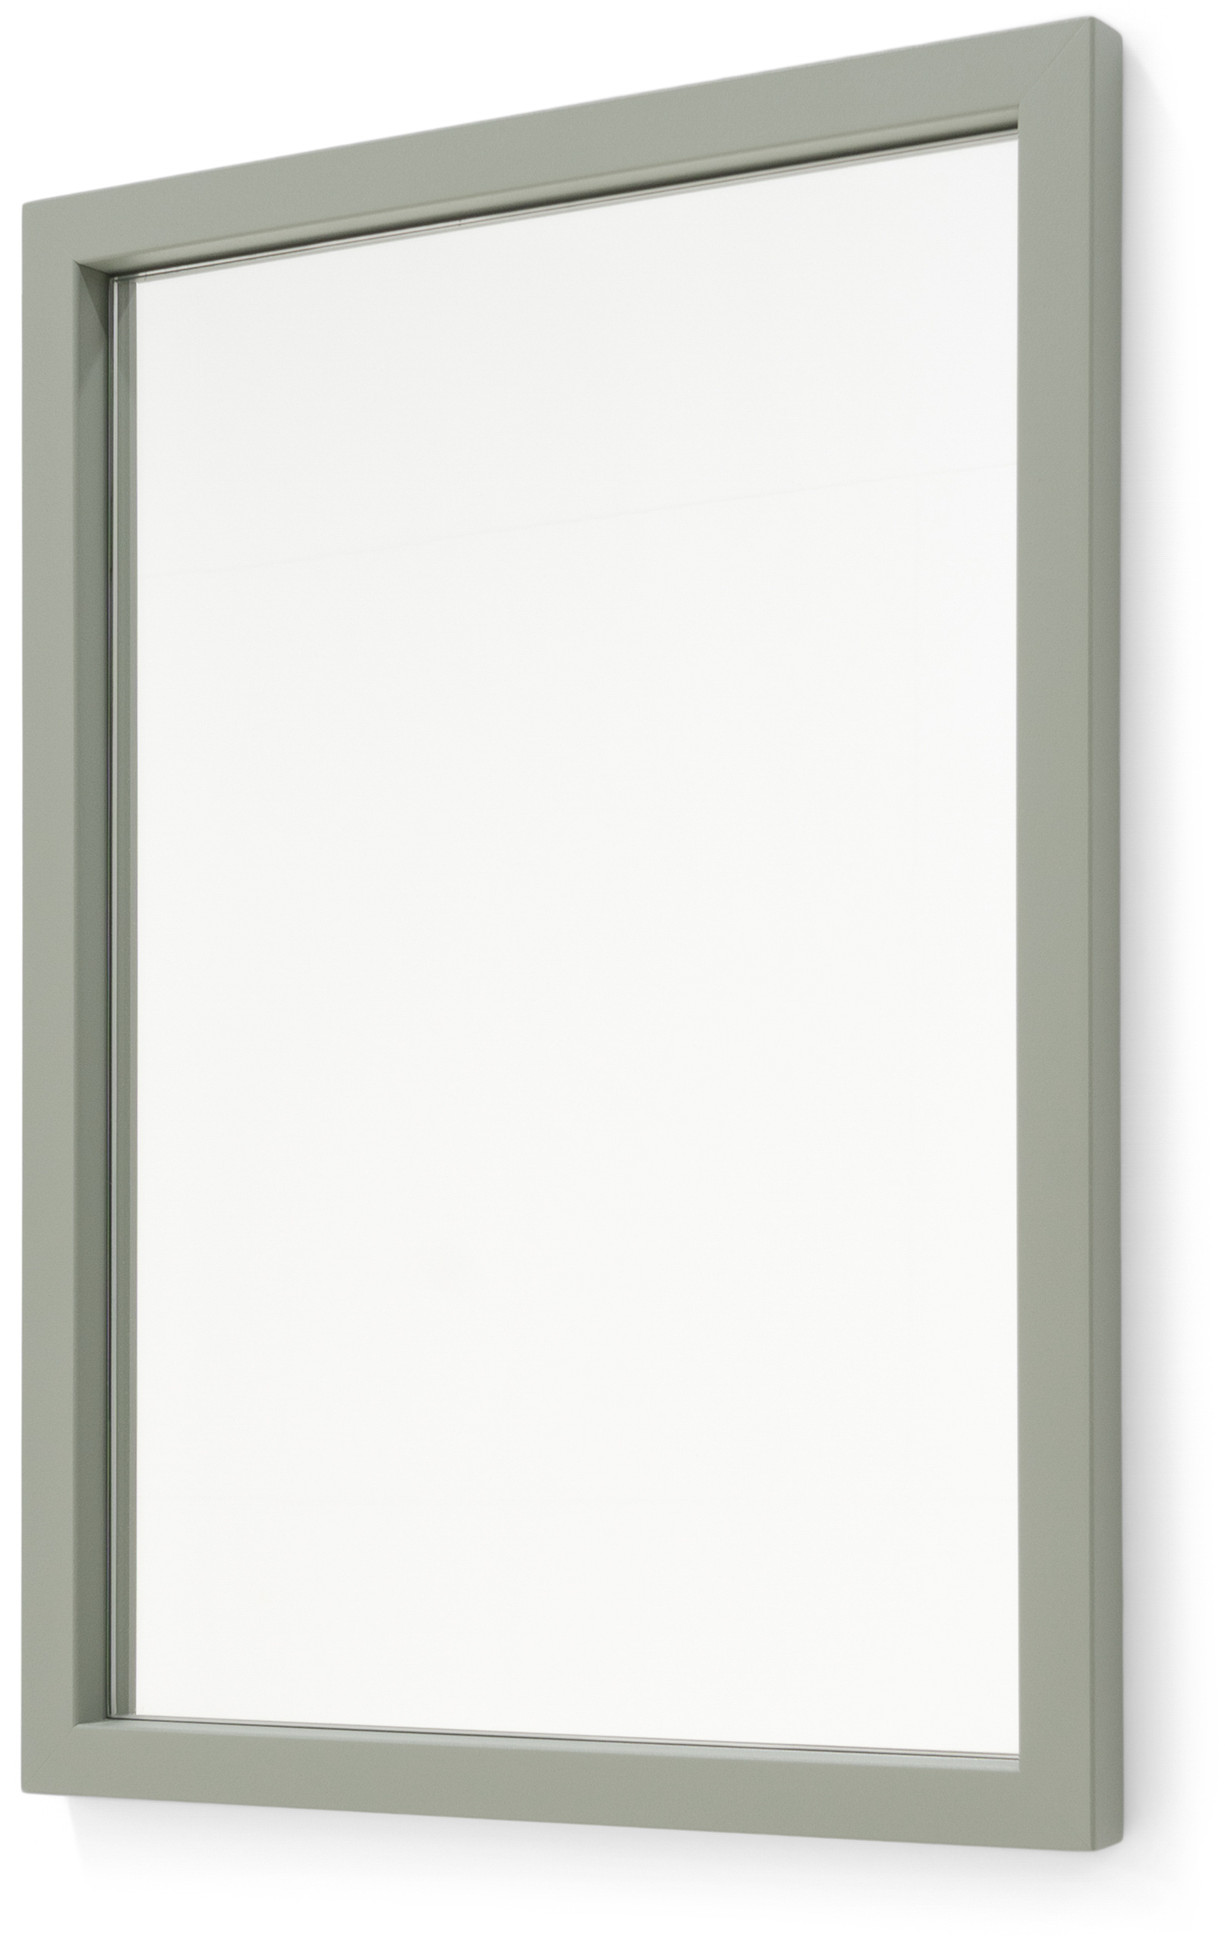 Senza M1 Spiegel - Dusty Green Spinder Design Spiegel SW003-33